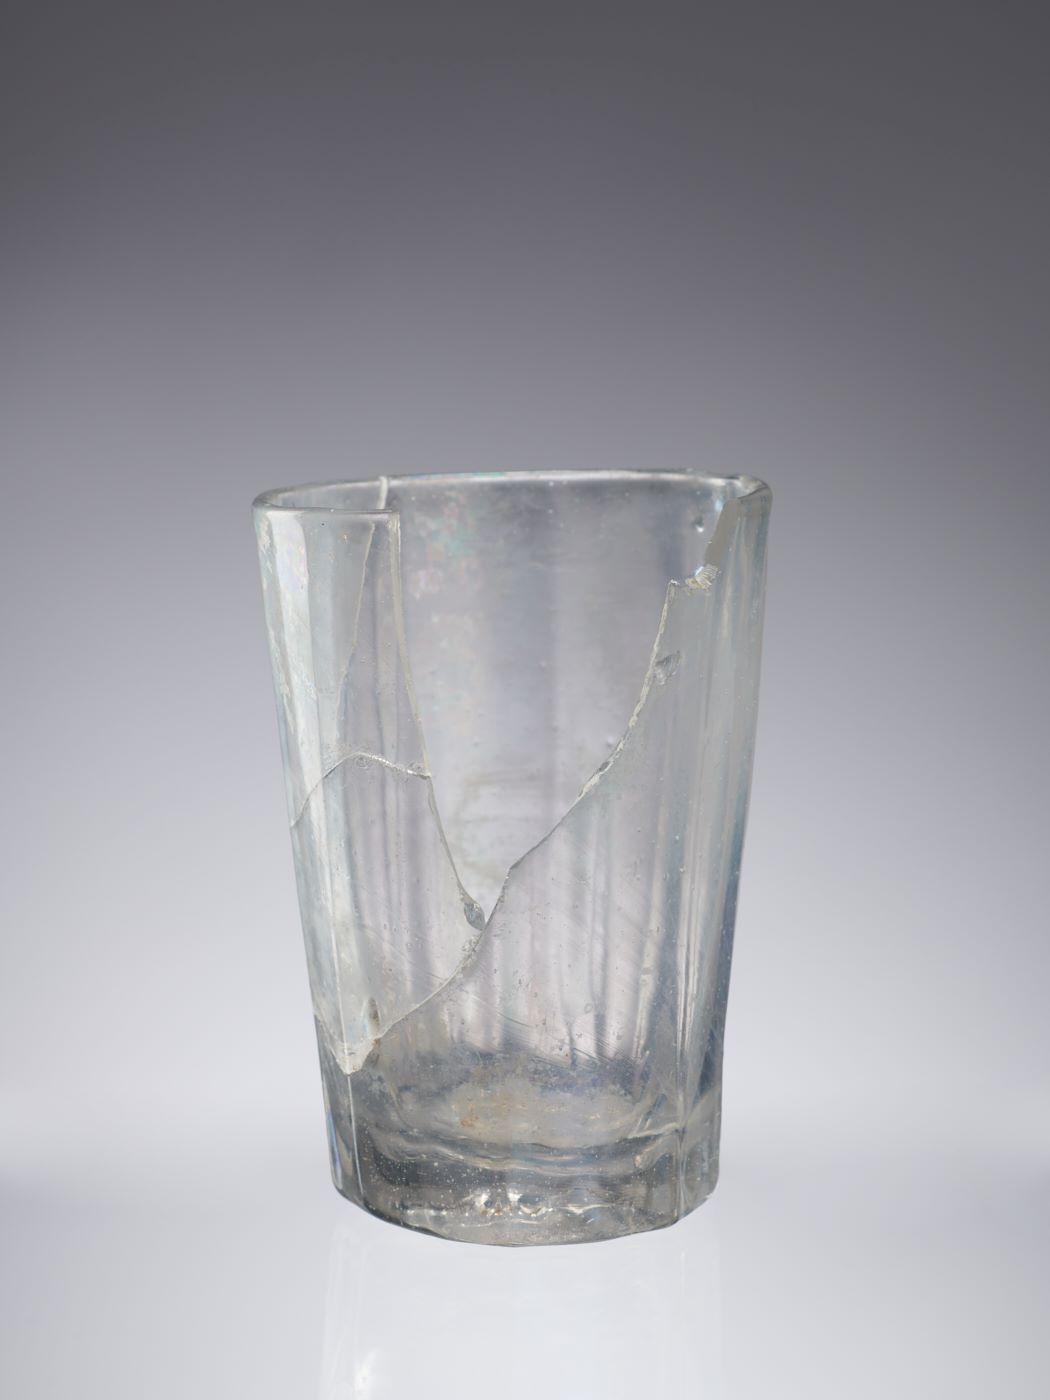 Popękana i pozbawiona fragmentu szkła w górnej części, przezroczysta szklanka, zwężona u dołu, z grubym dnem.